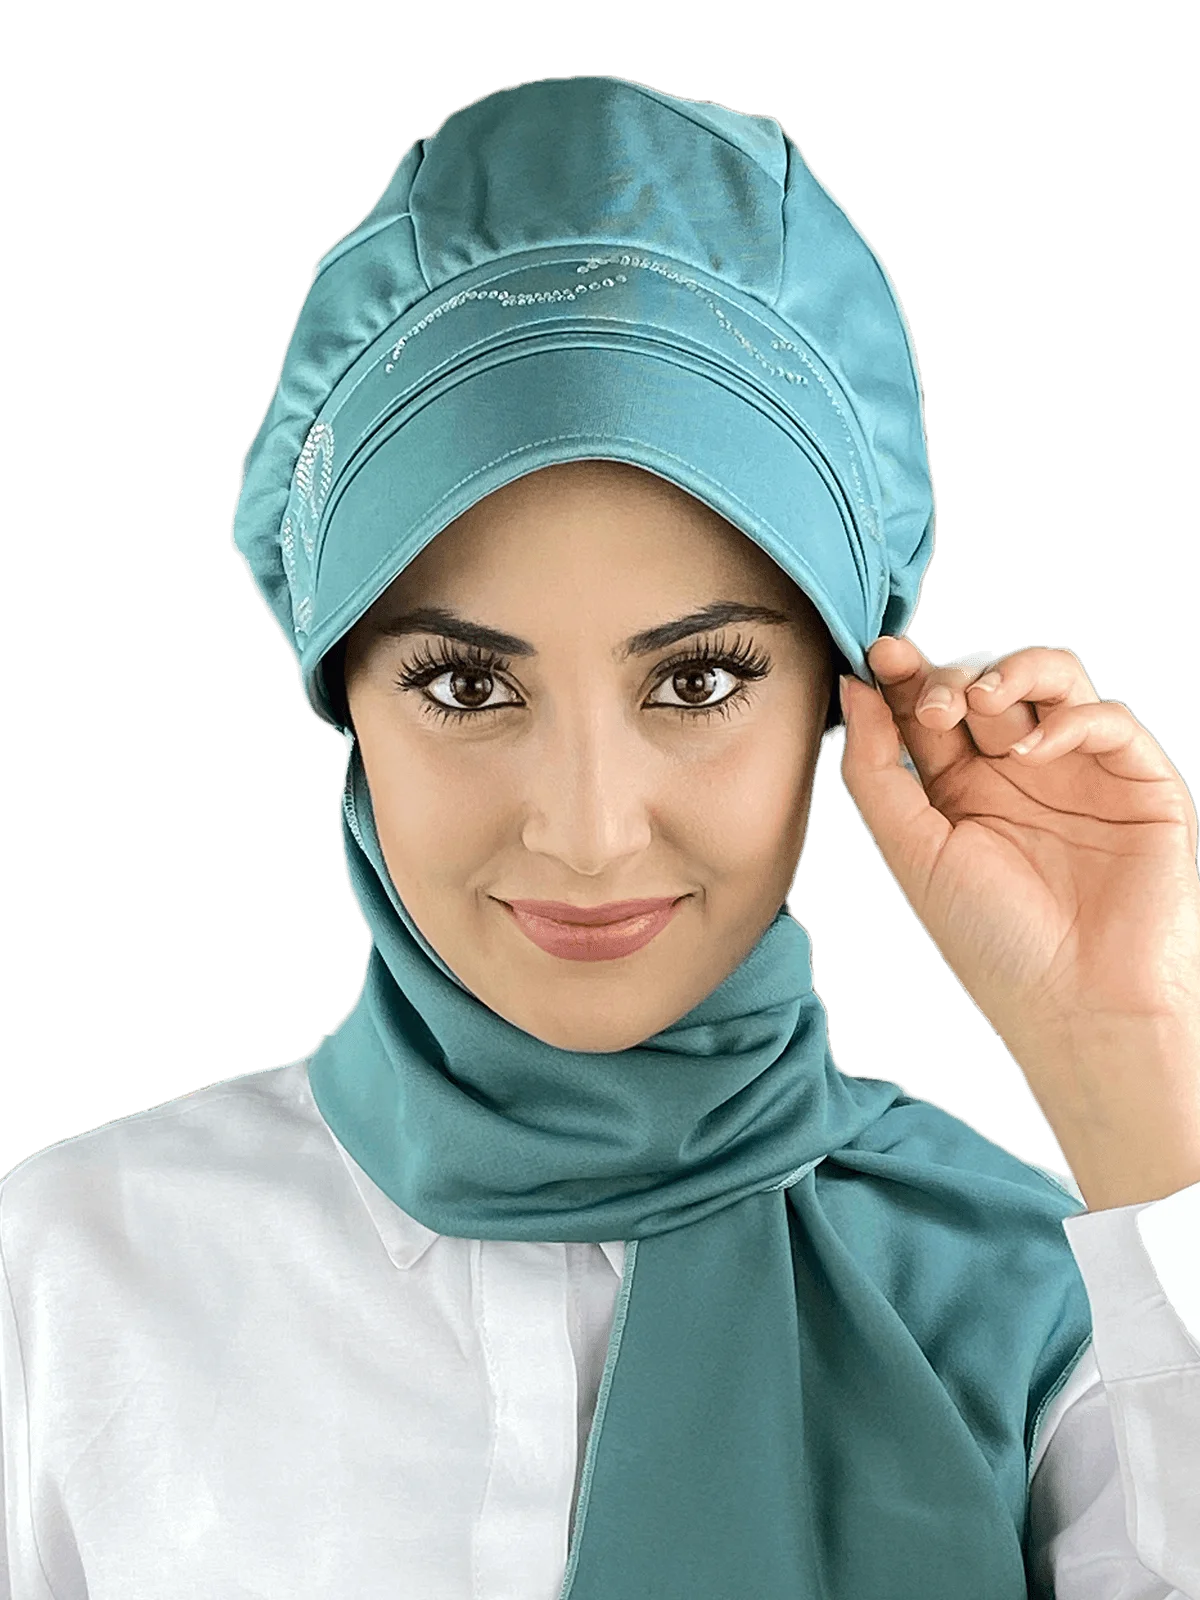 

Бирюзовый шарф с принтом камней, шапка, новый модный исламский мусульманский женский шарф, трендовый хиджаб, готовая к ношении шапка, Beere Bone